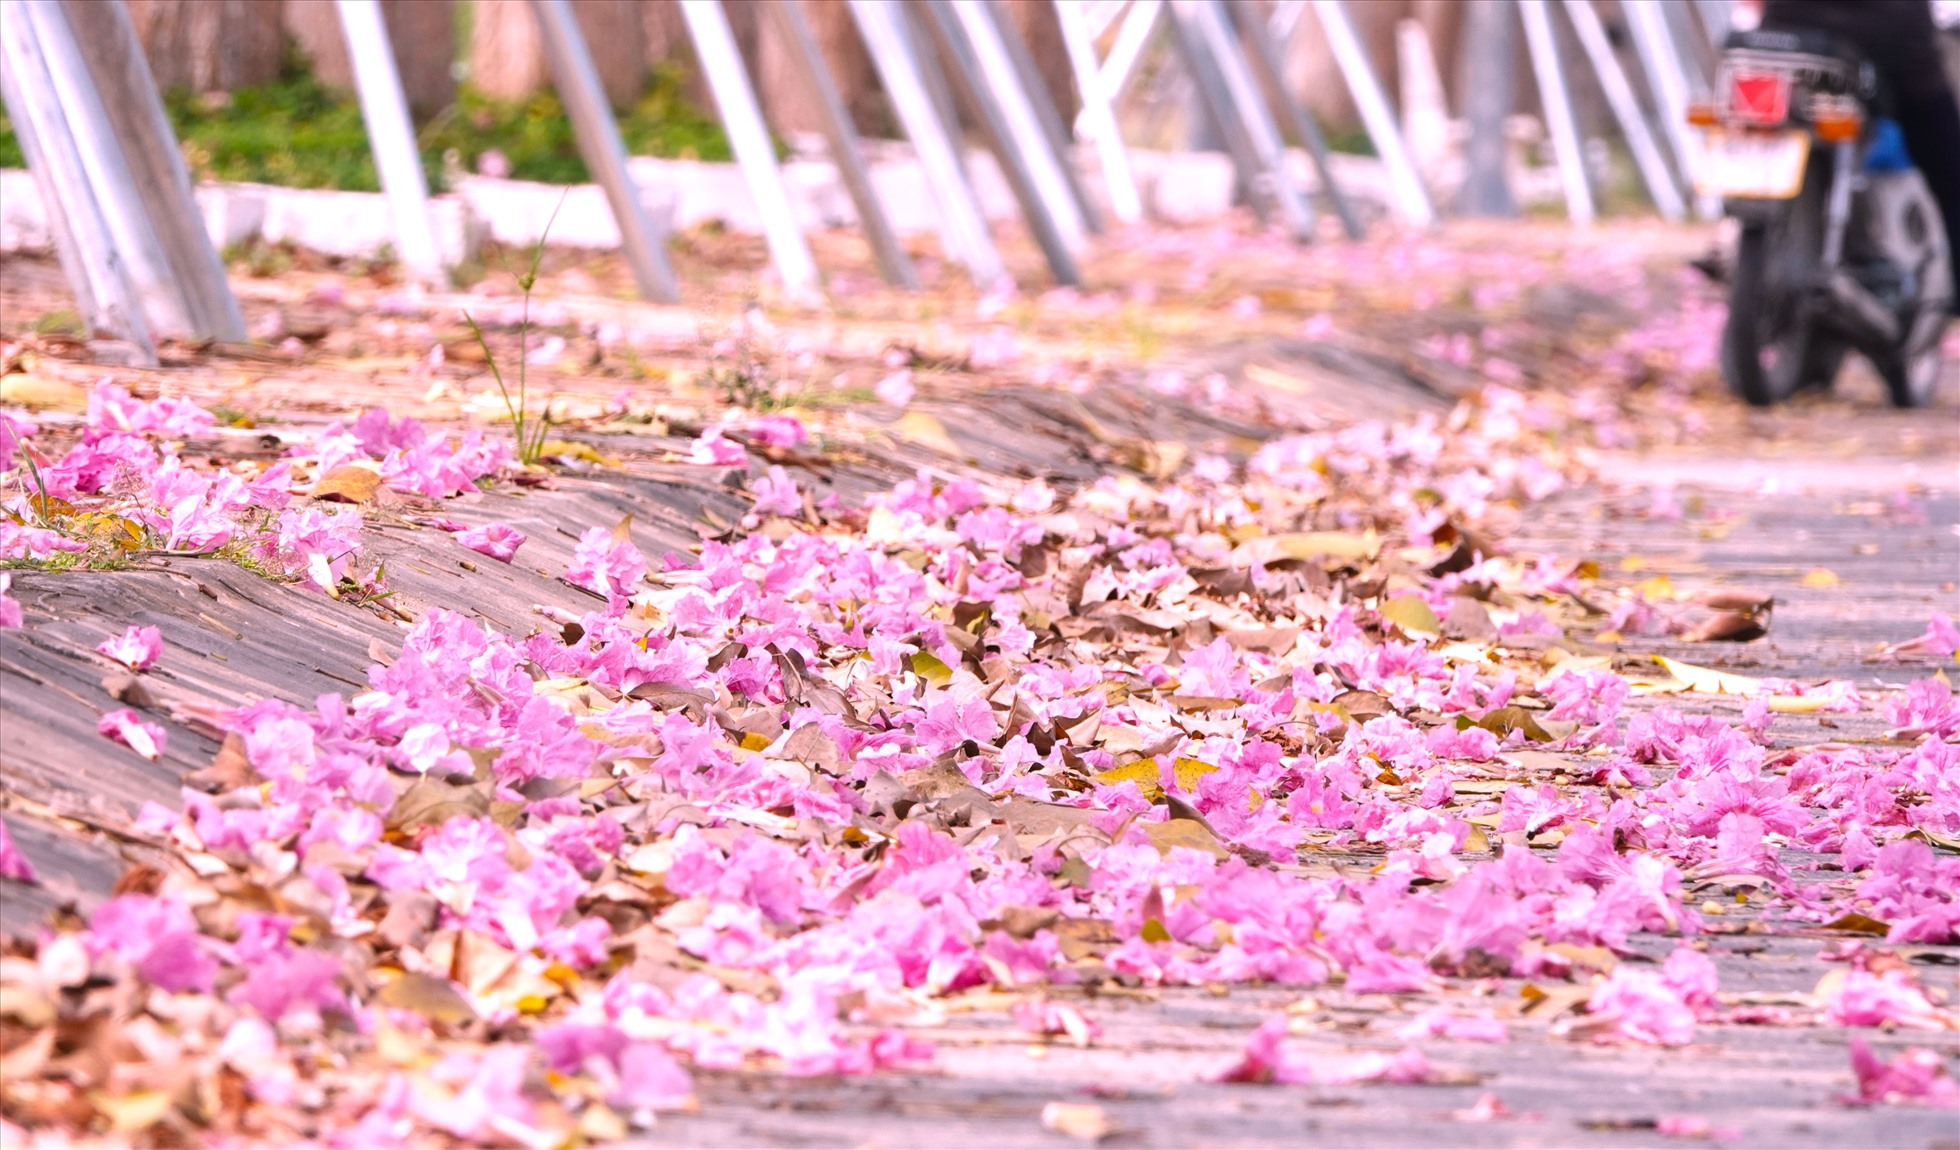 Chỉ cần có cơn gió nhẹ thổi qua là những đóa hoa thanh mảnh sẽ rơi xuống, xác hoa nhuộm hồng các đoạn vỉa hè.